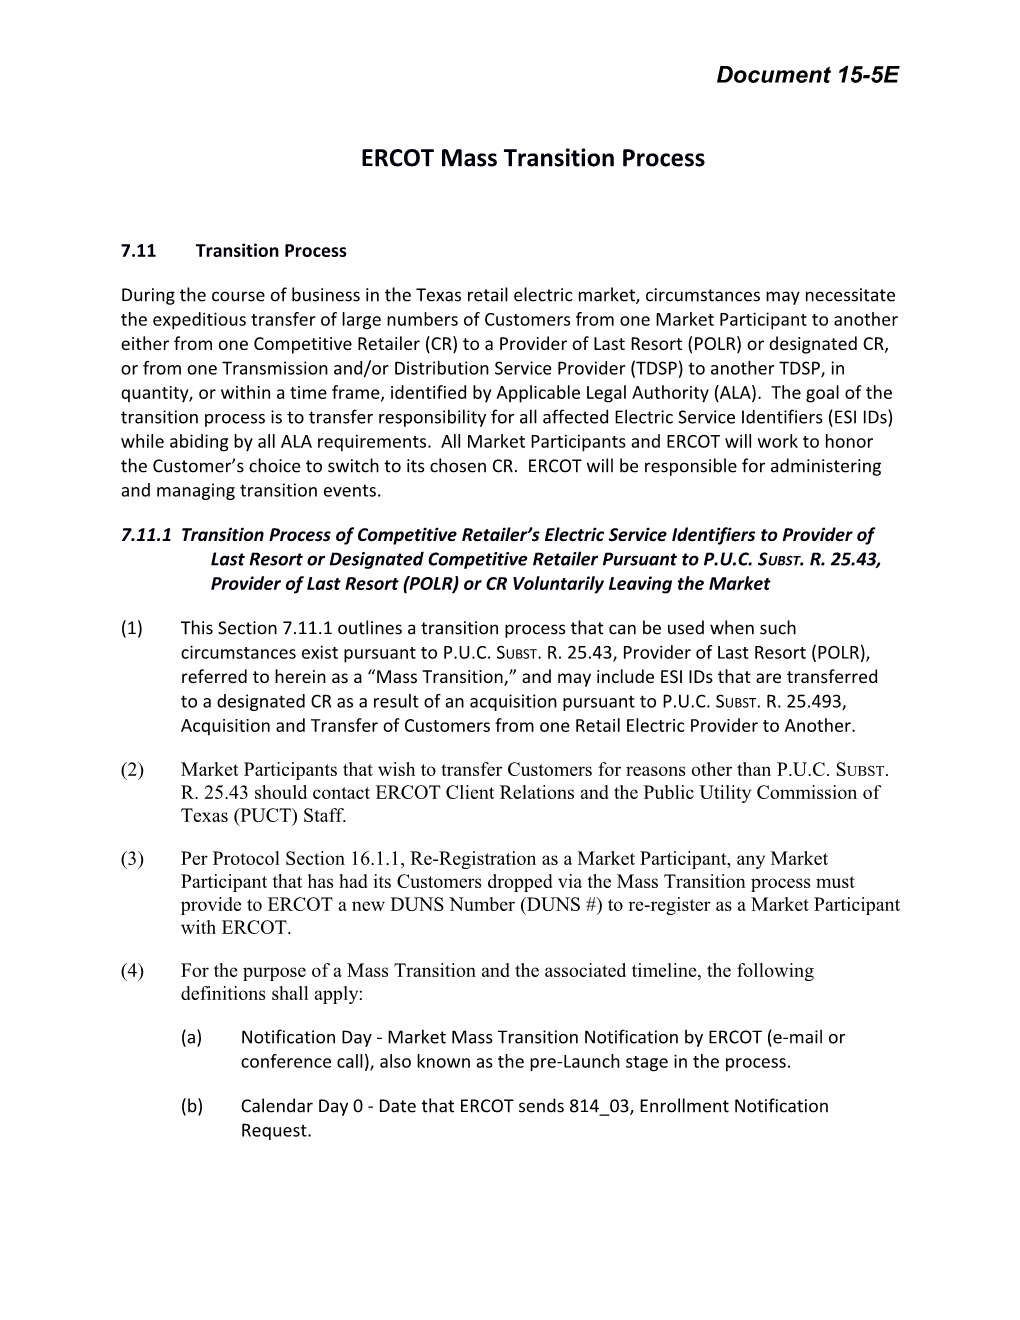 ERCOT Mass Transition Process